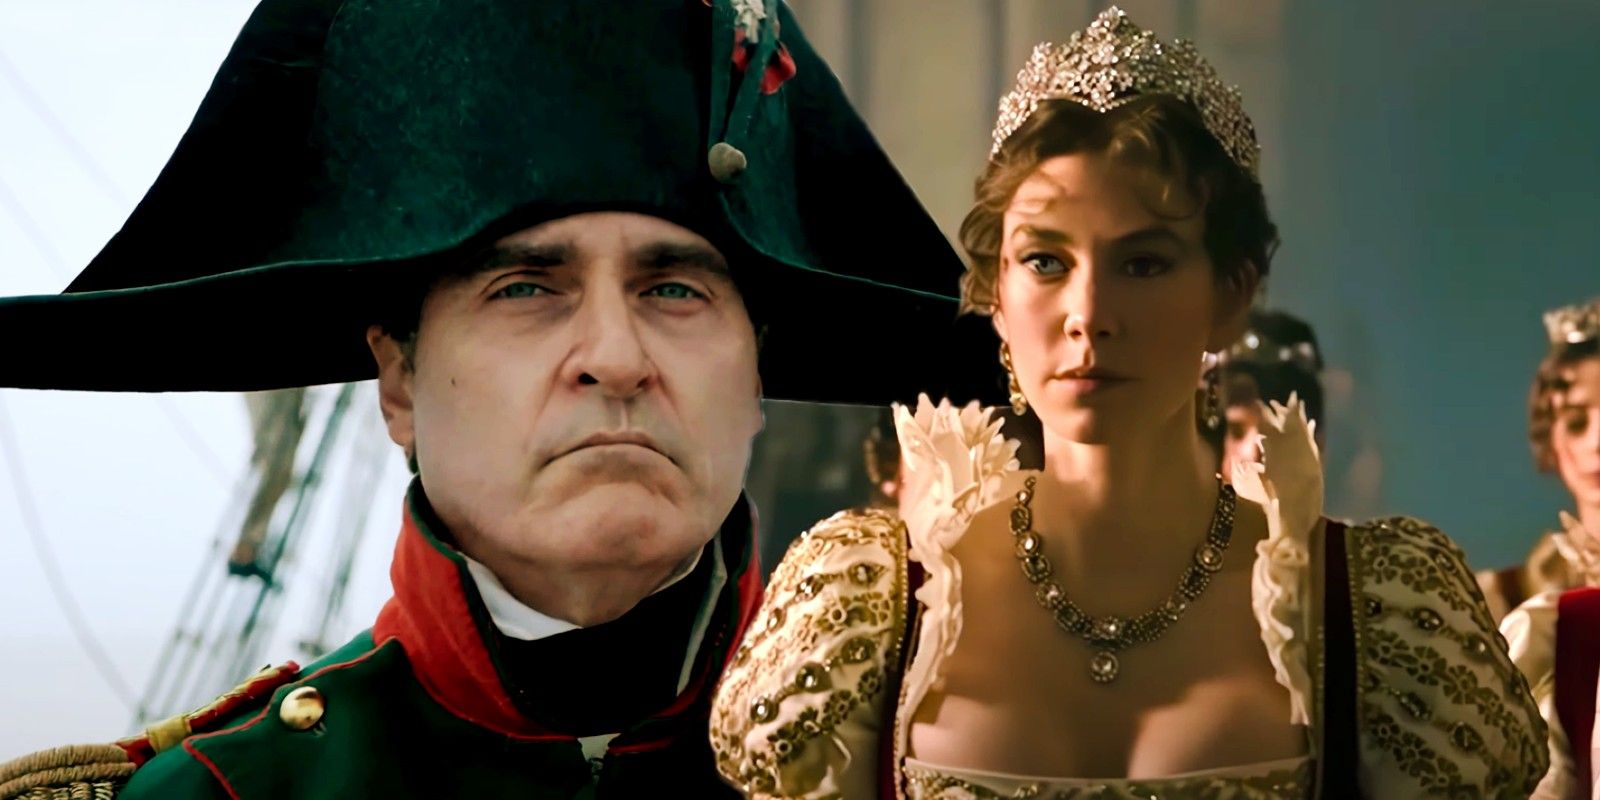 Por qué Napoleón de Ridley Scott está más interesado en Joséphine que en "campos de batalla" o "escenas de sexo"